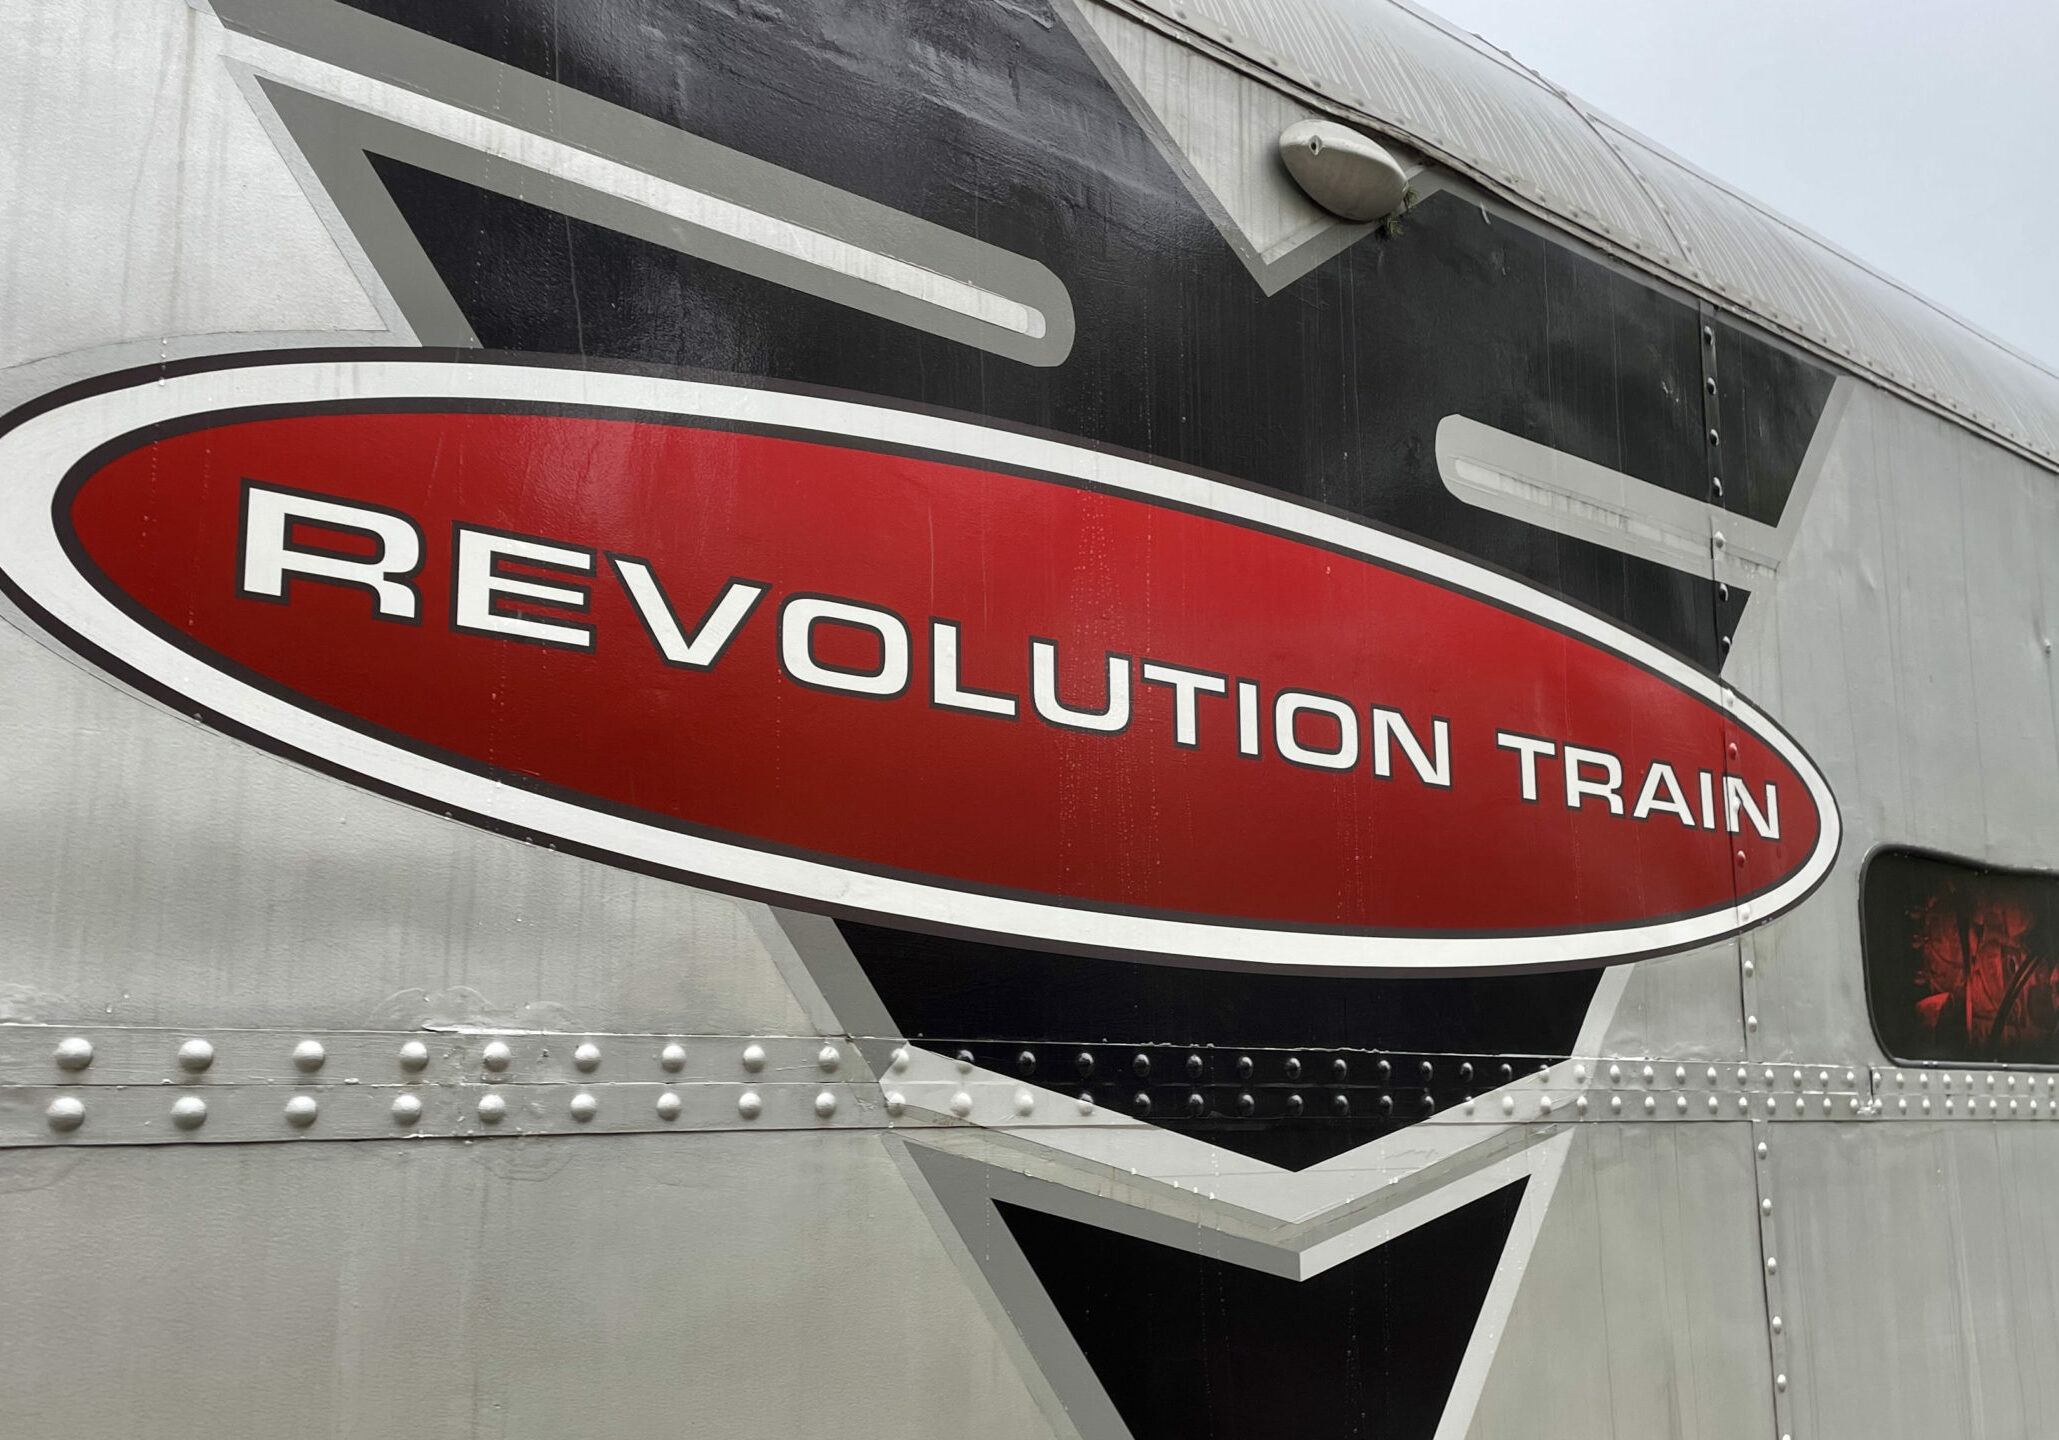 Projekt Revolution Train 